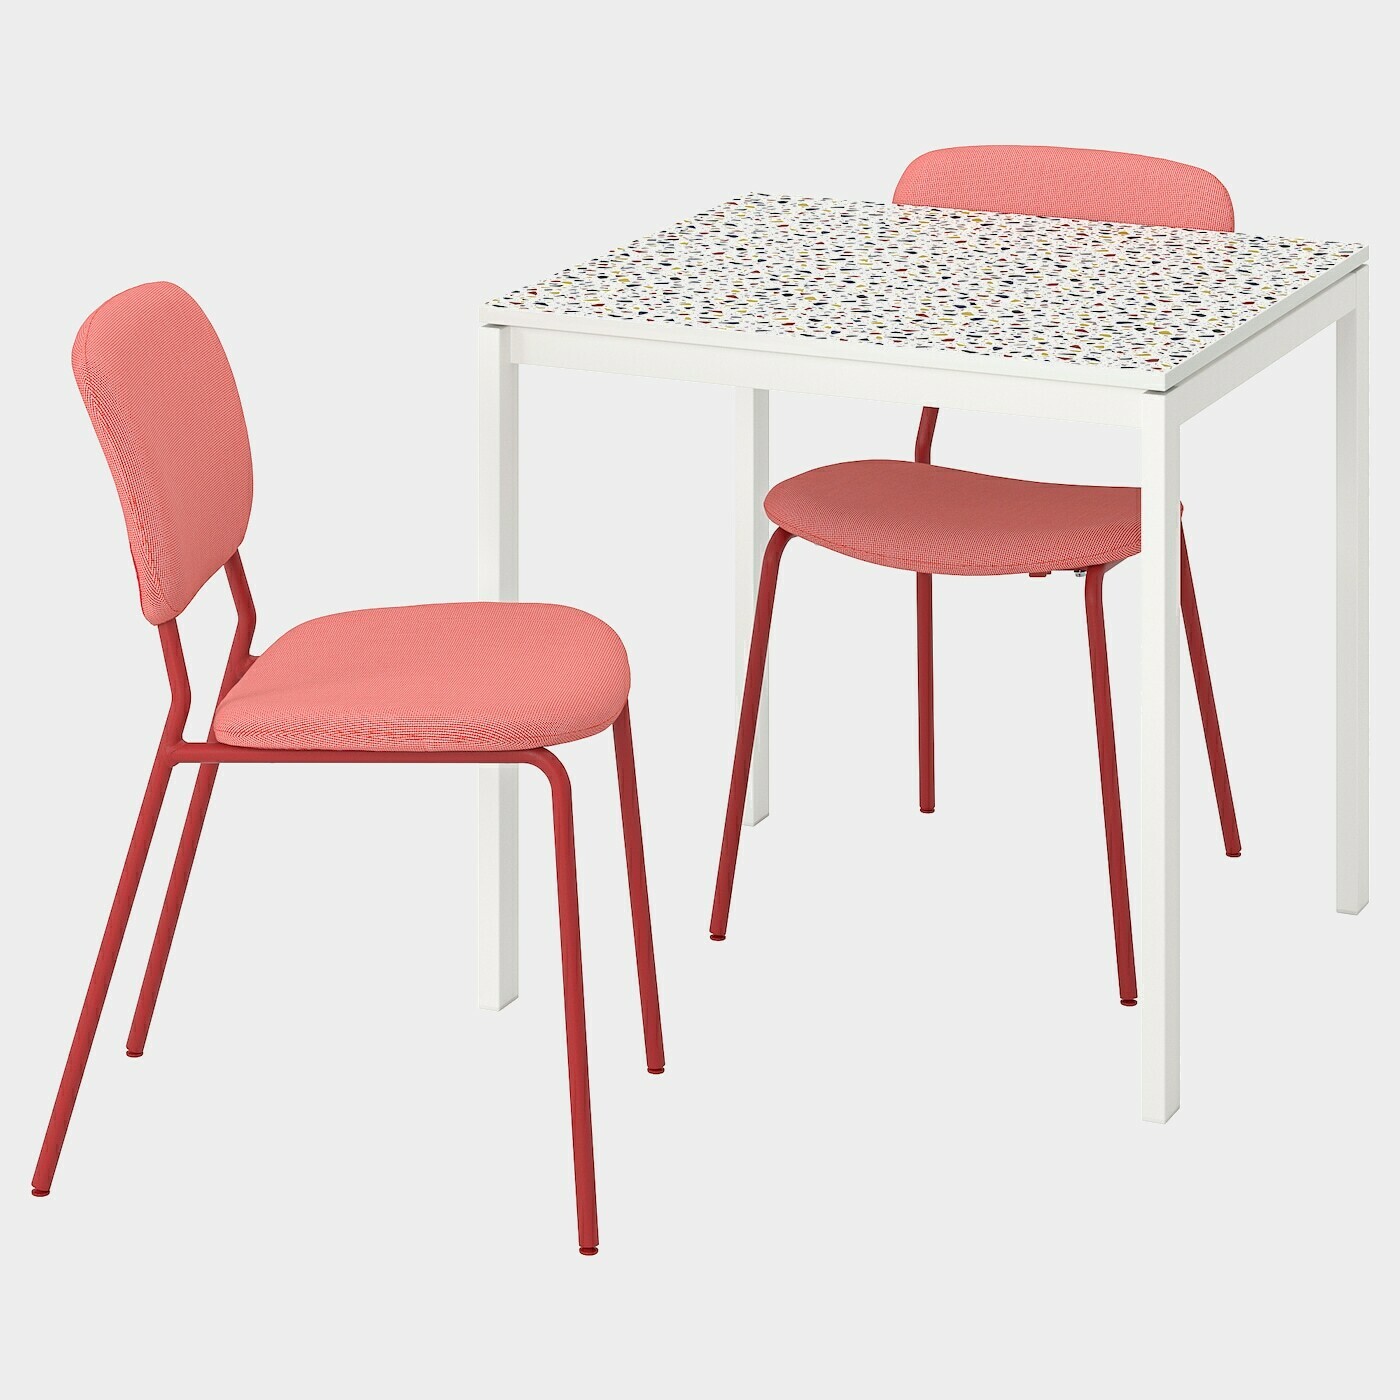 MELLTORP / KARLJAN Tisch und 2 Stühle  -  - Möbel Ideen für dein Zuhause von Home Trends. Möbel Trends von Social Media Influencer für dein Skandi Zuhause.